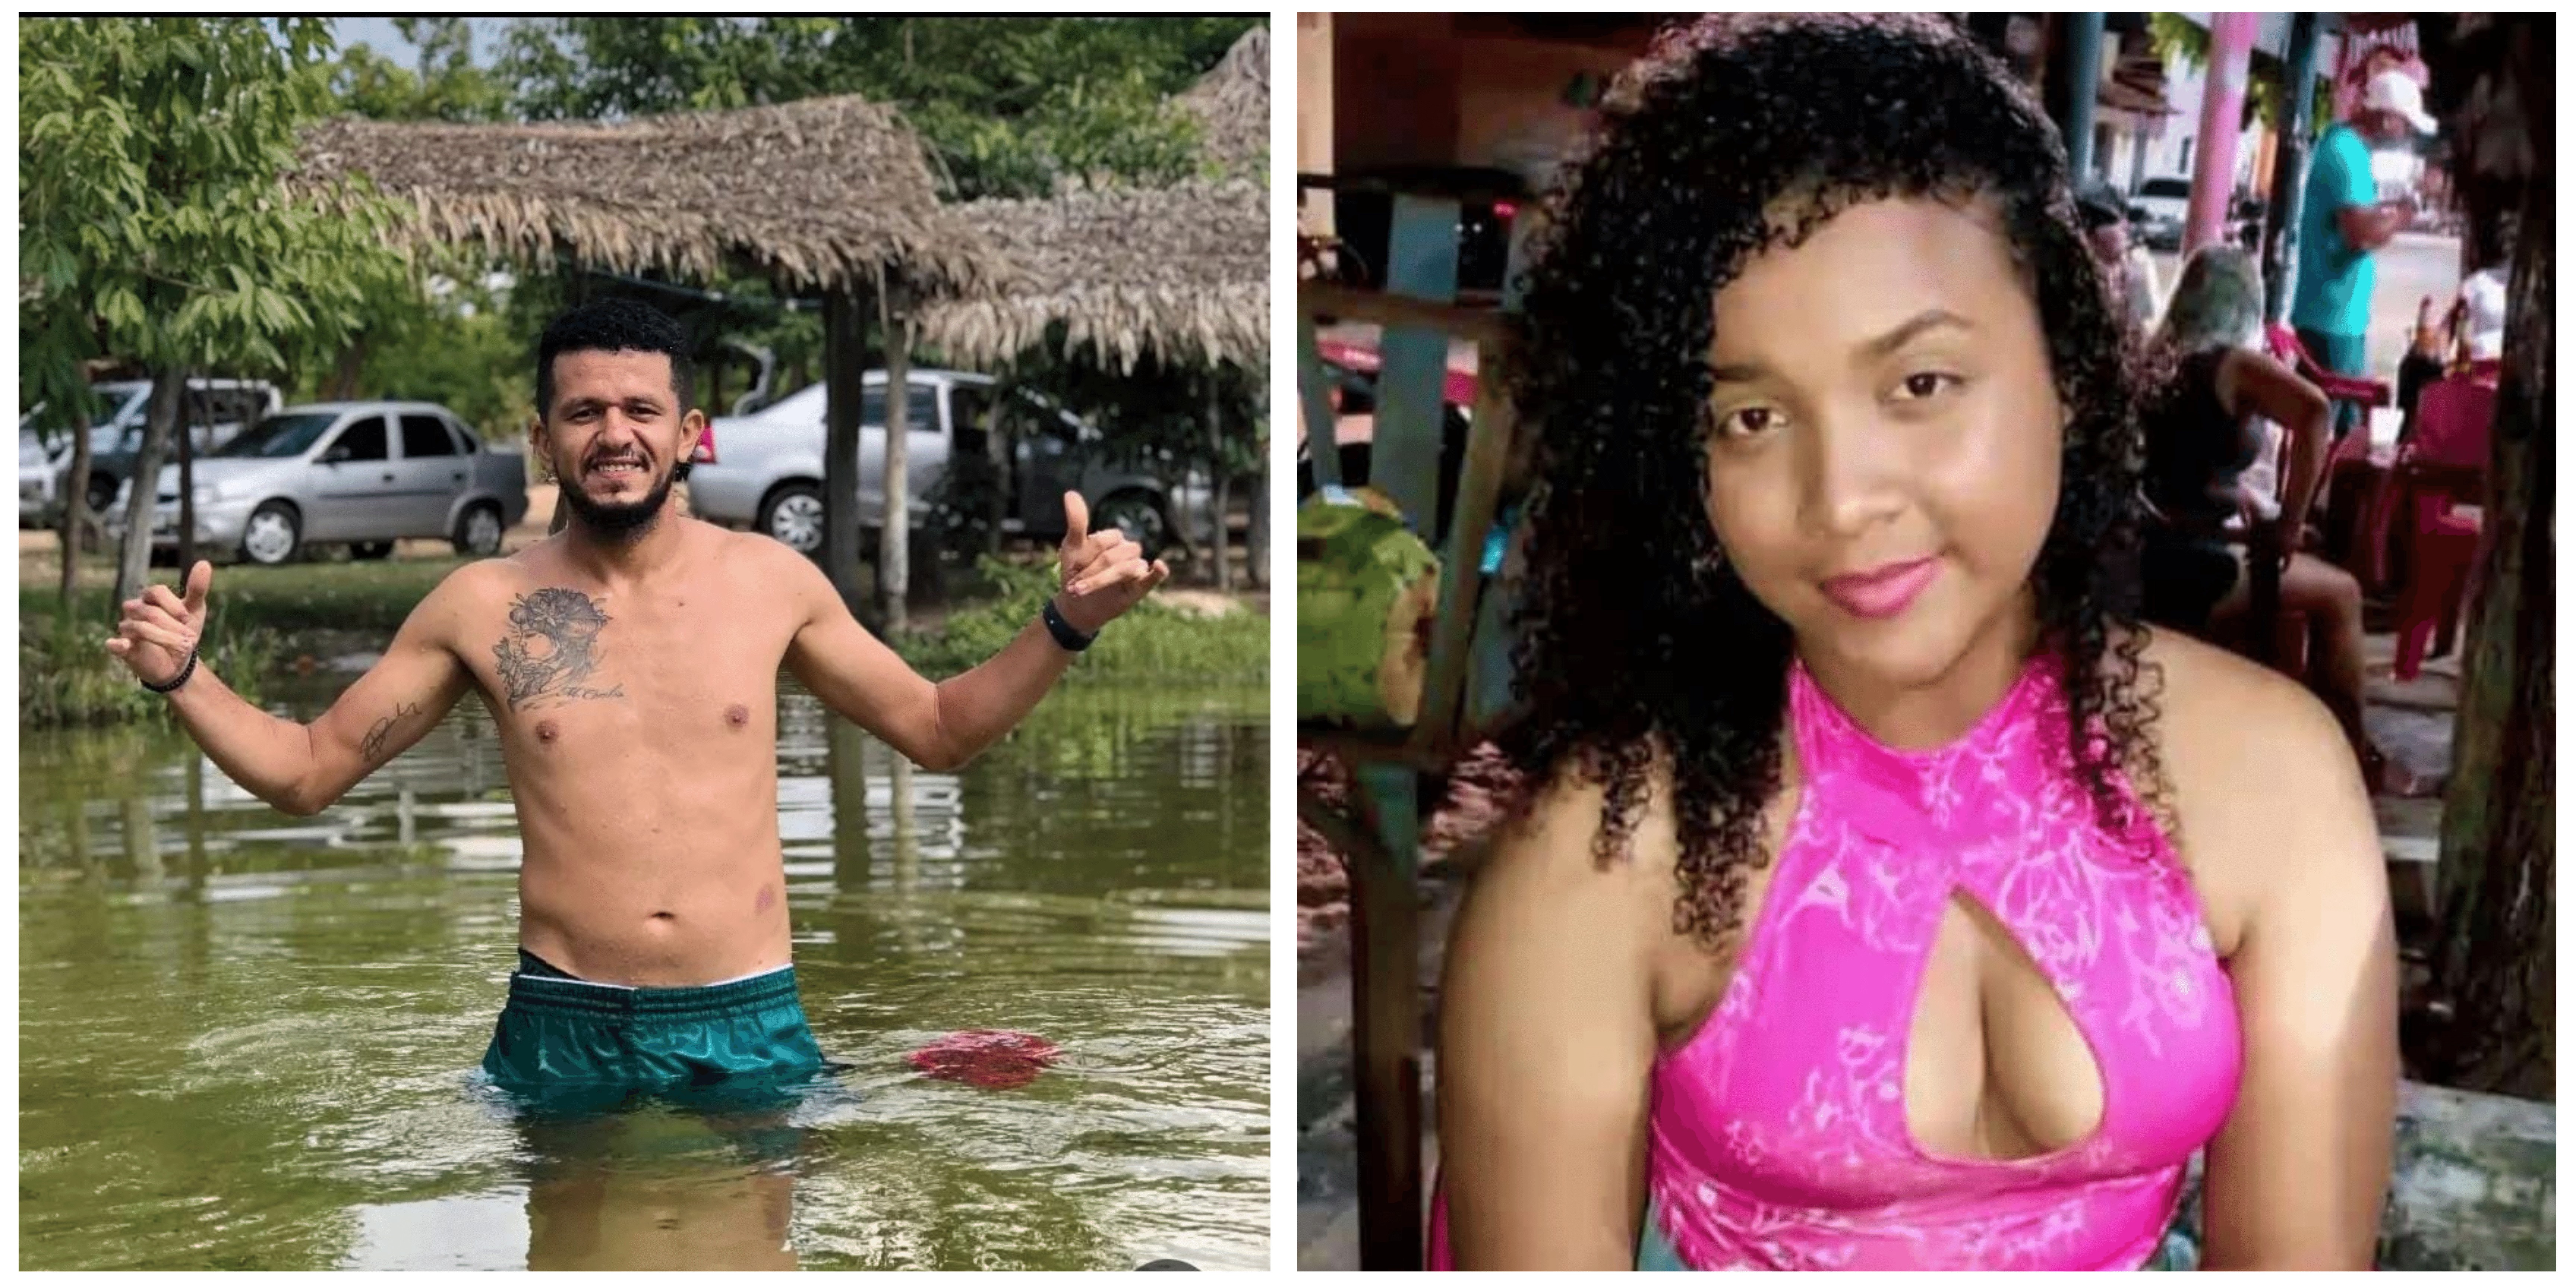 Preso suspeito de matar homem e mulher durante festa em bar na cidade de Caxias, no leste do Maranhão